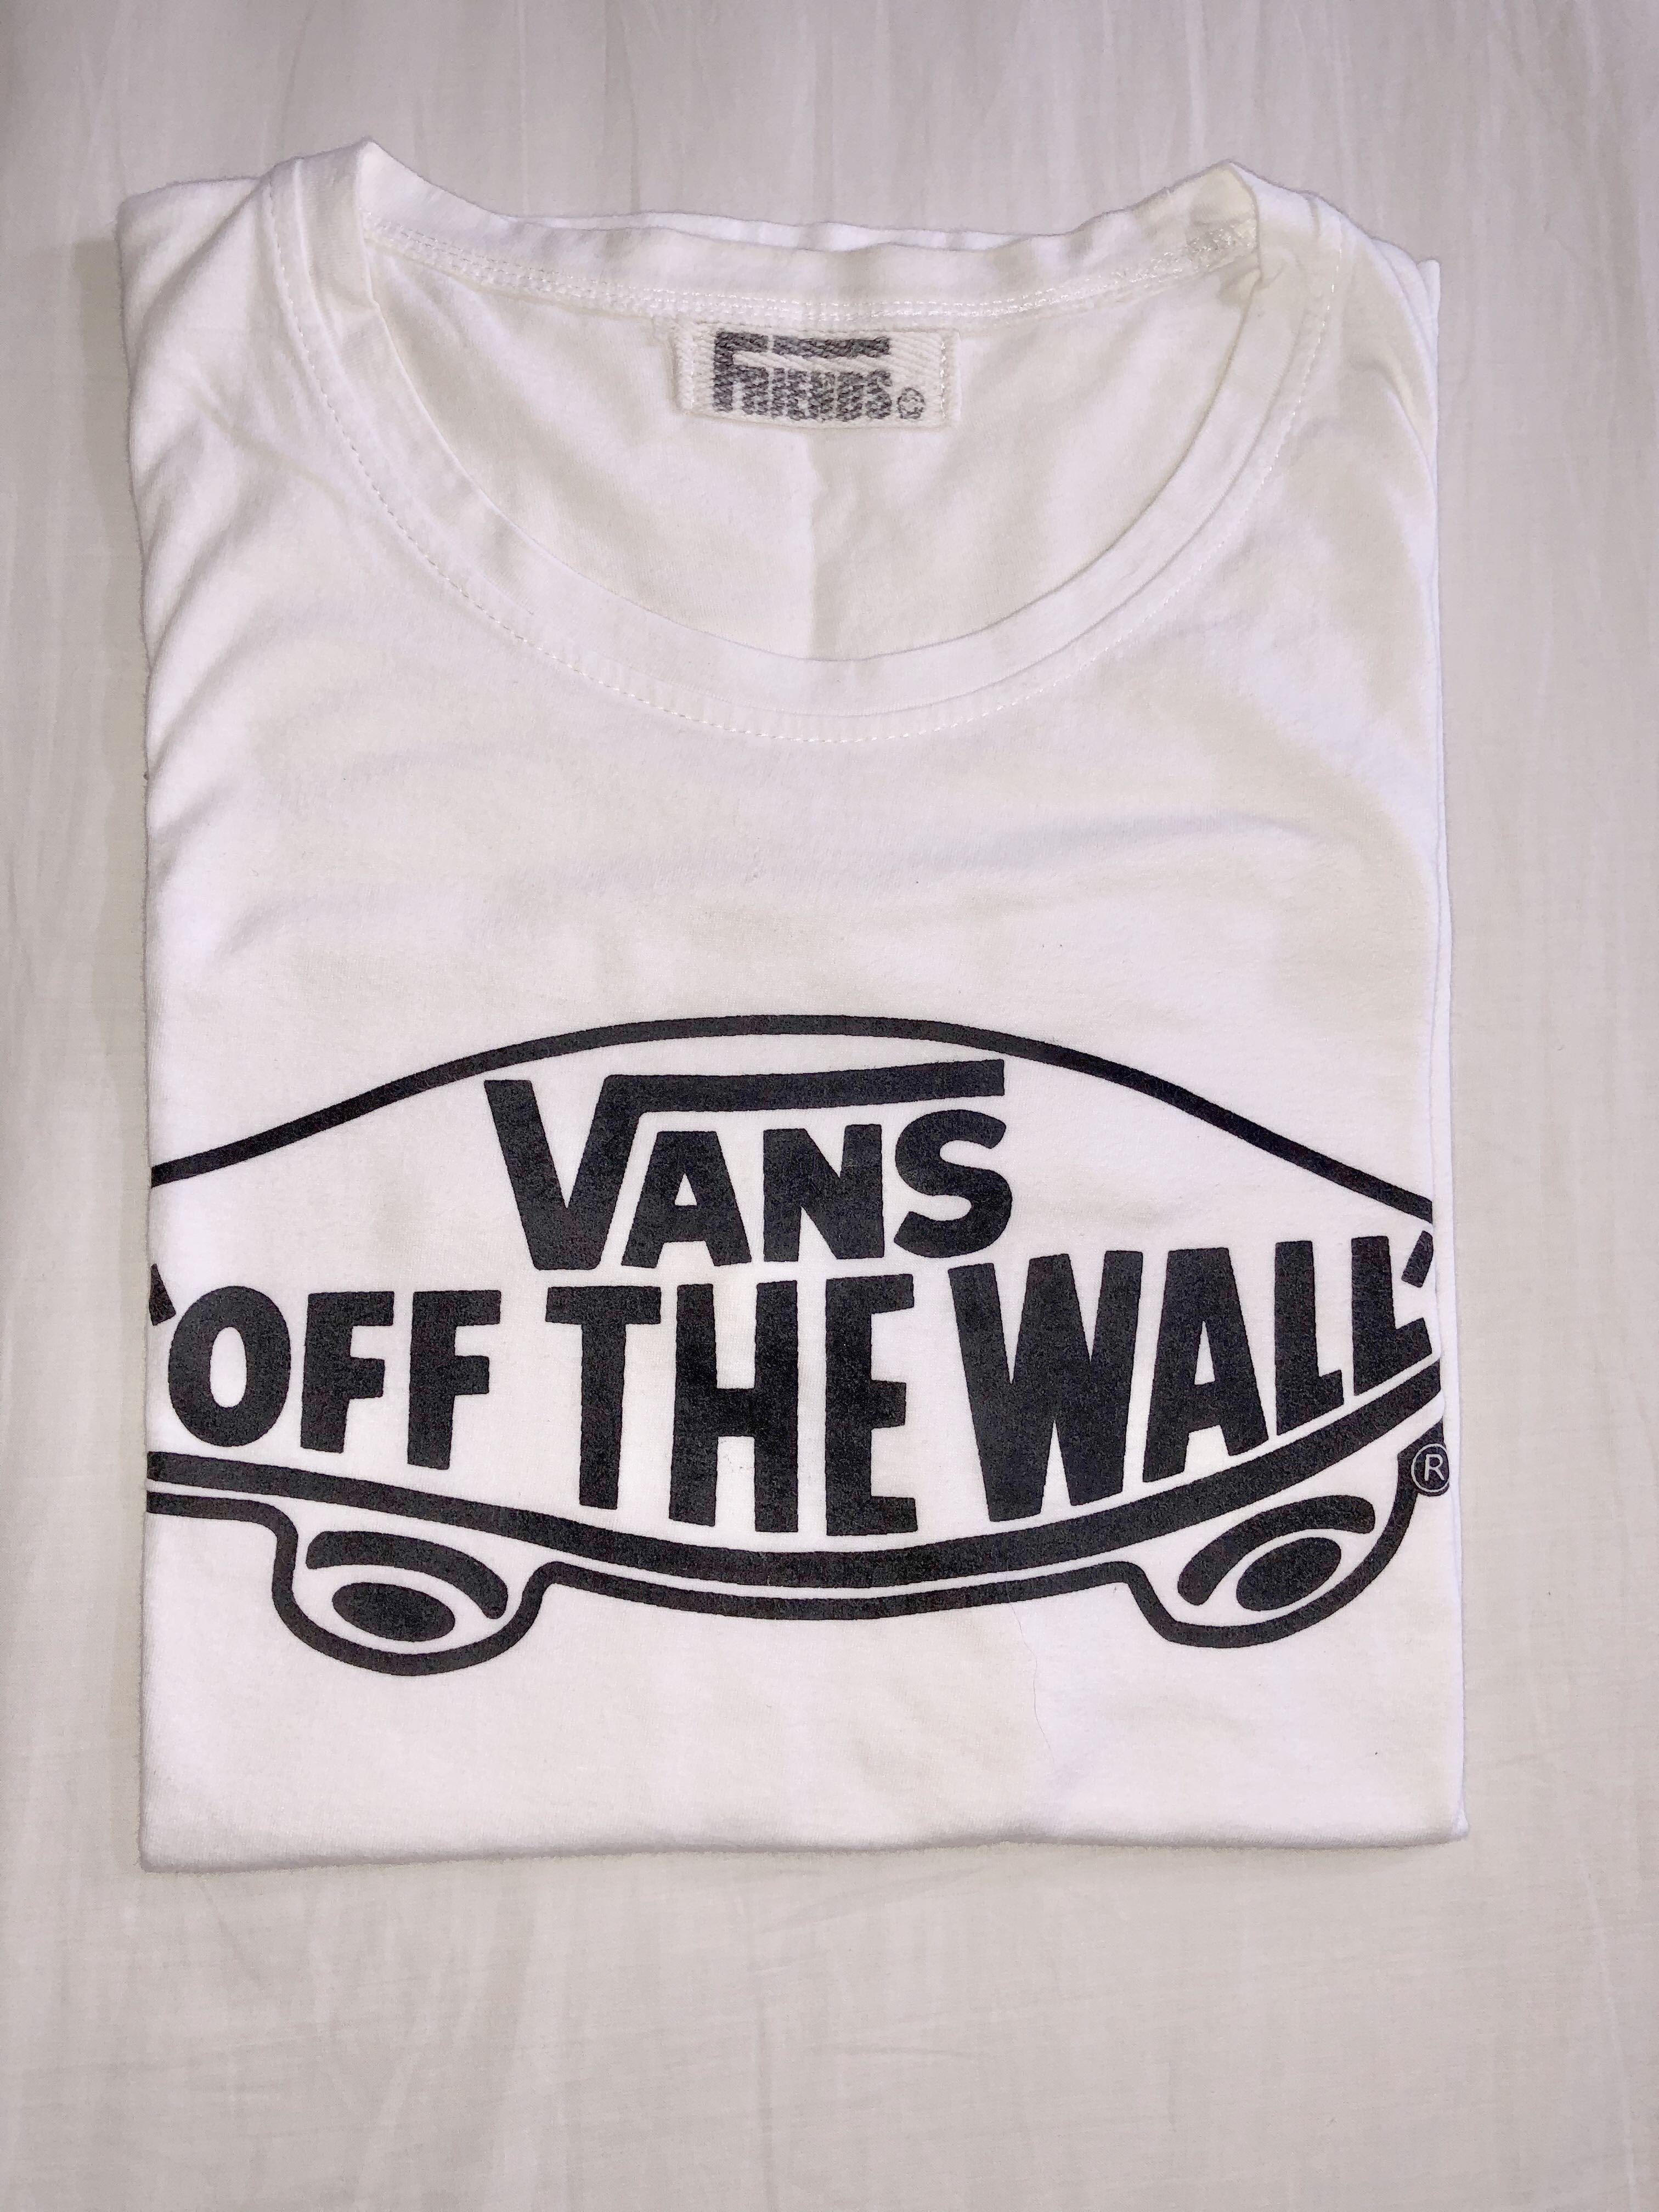 vans off the wall t shirt women's